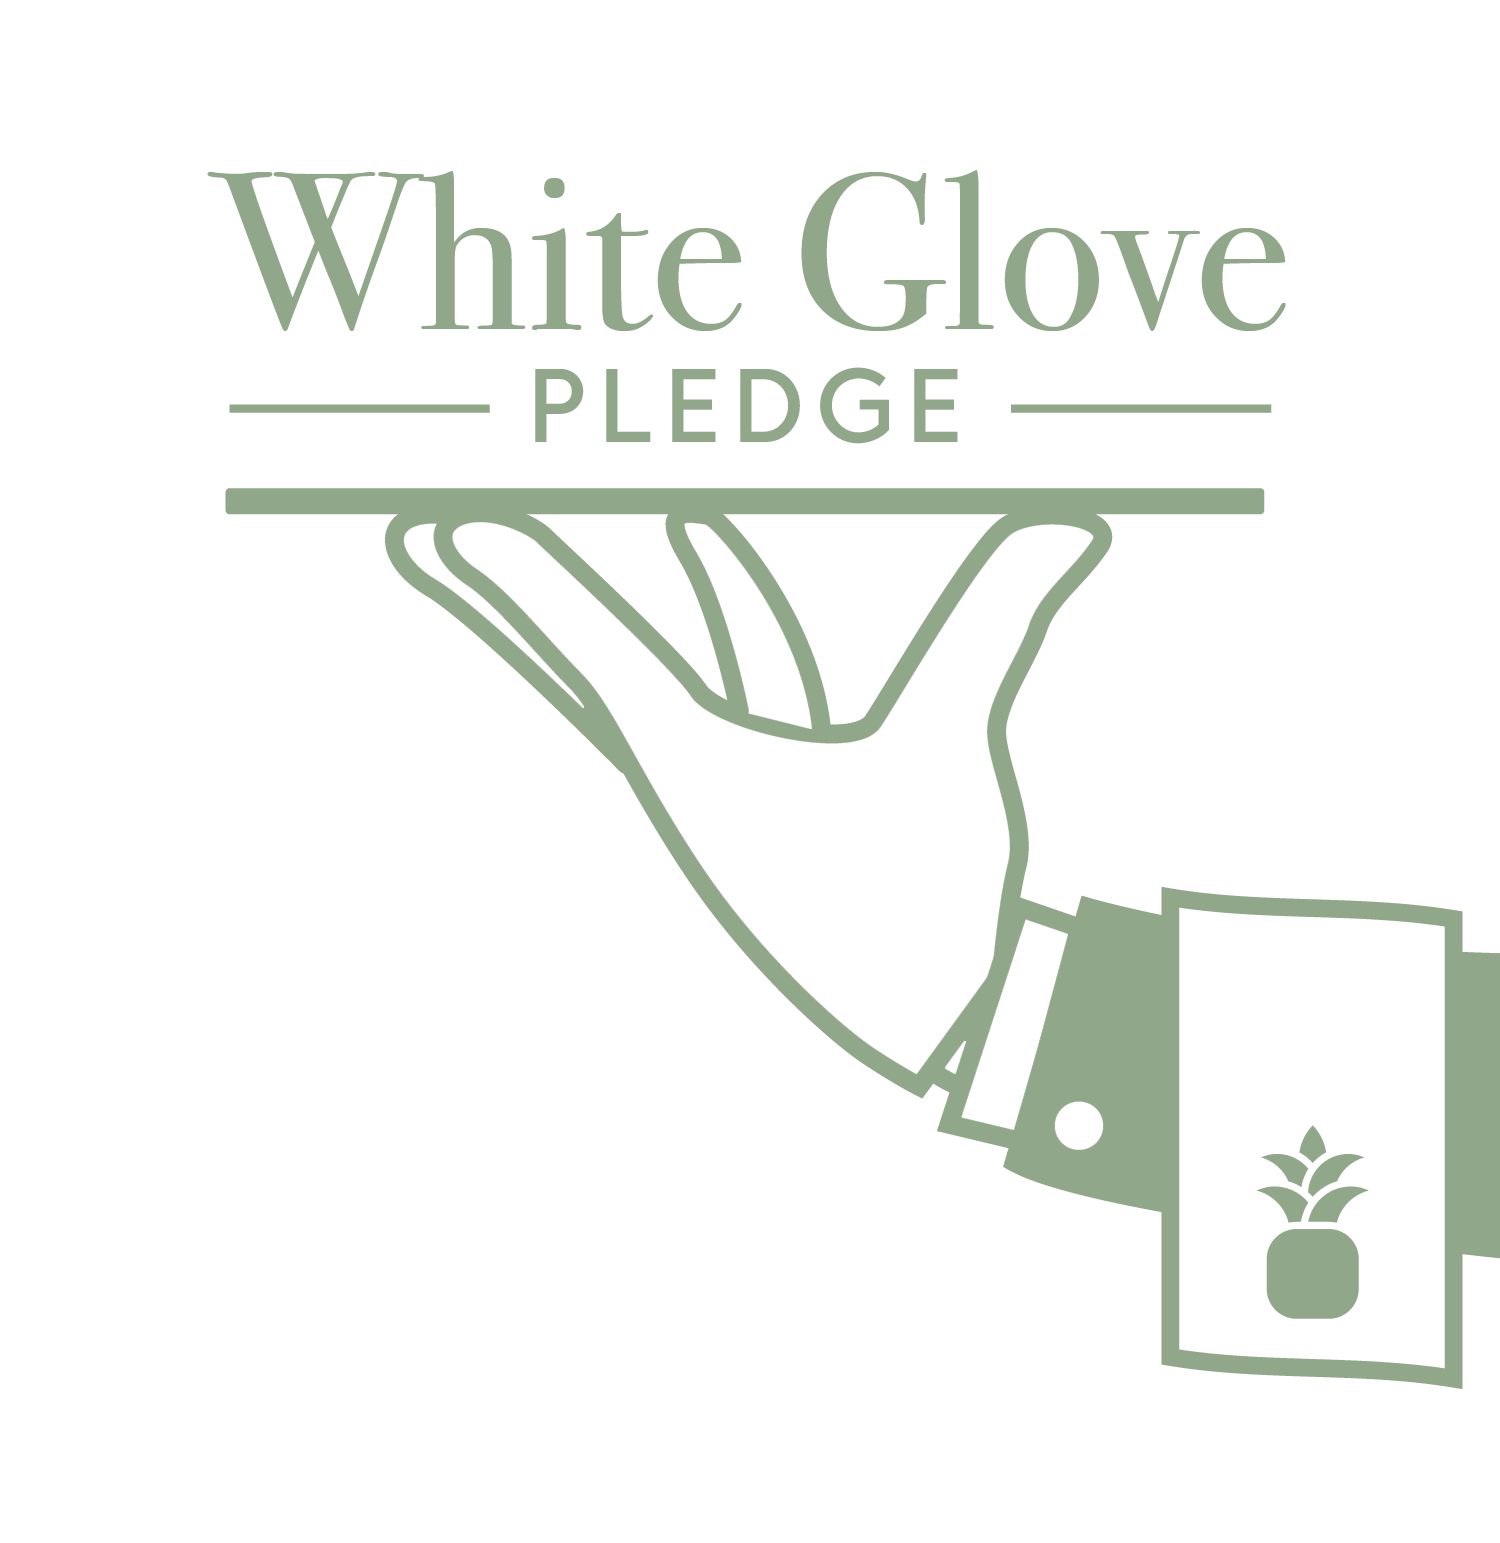 White Glove